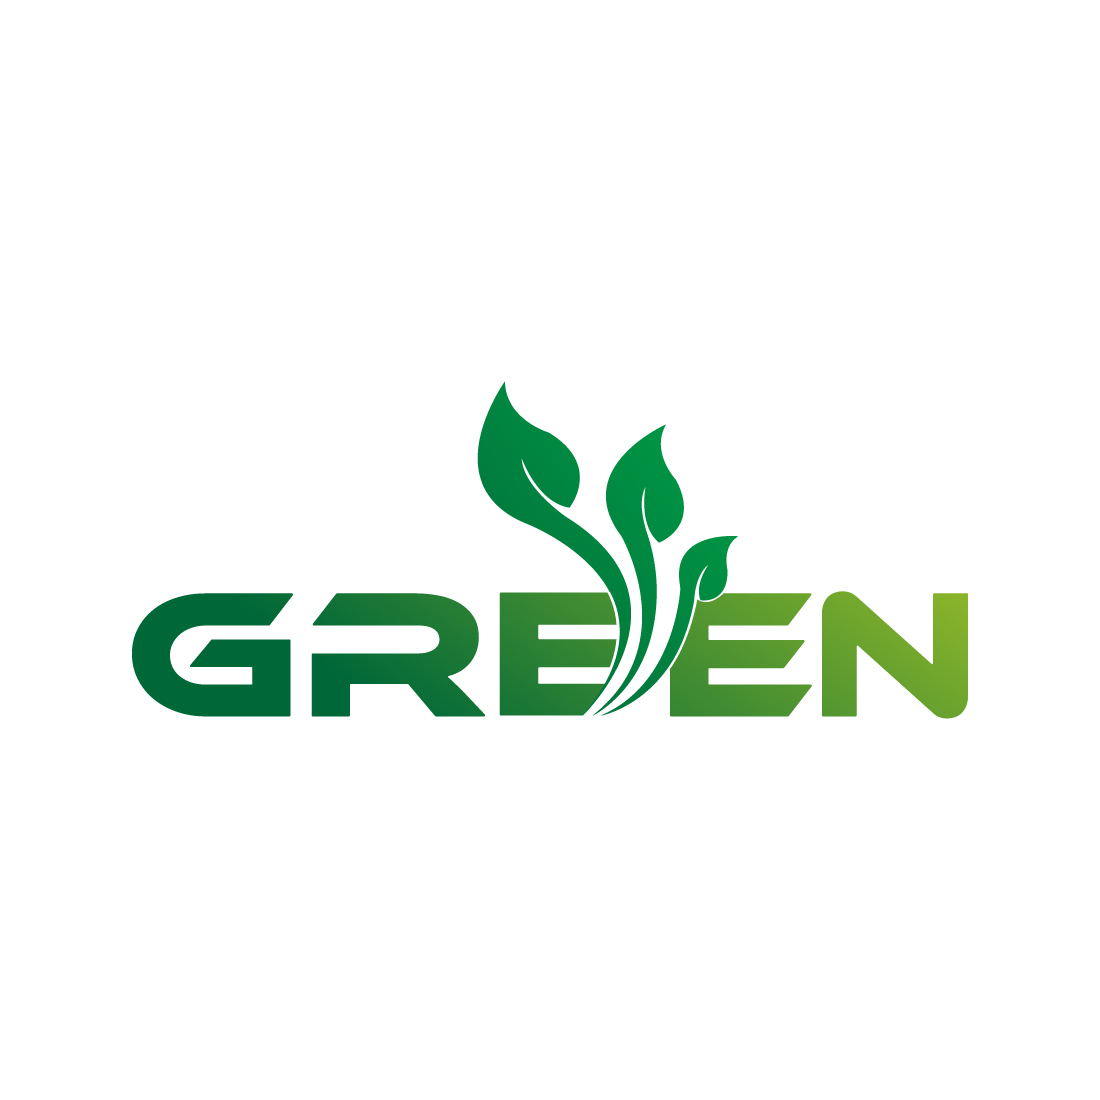 Green Leaf logo design vector images Green Tree logo design Green Vegetable logo design preview image.